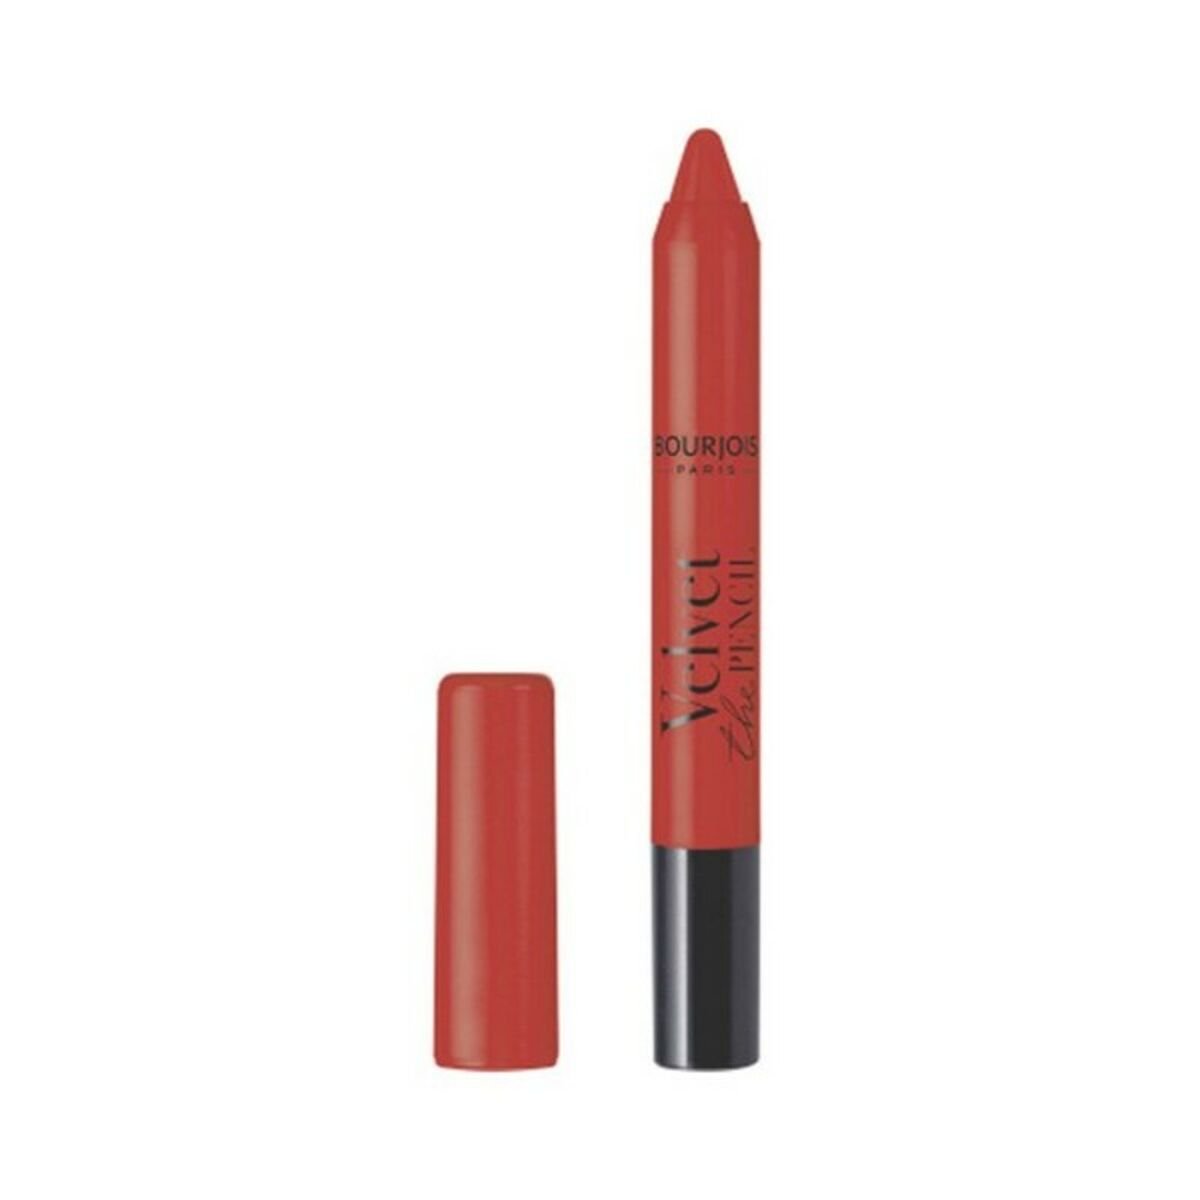 Lipstick Velvet The Pencil matt Bourjois (3 g) 3 g - JOSEPH BEAUTY